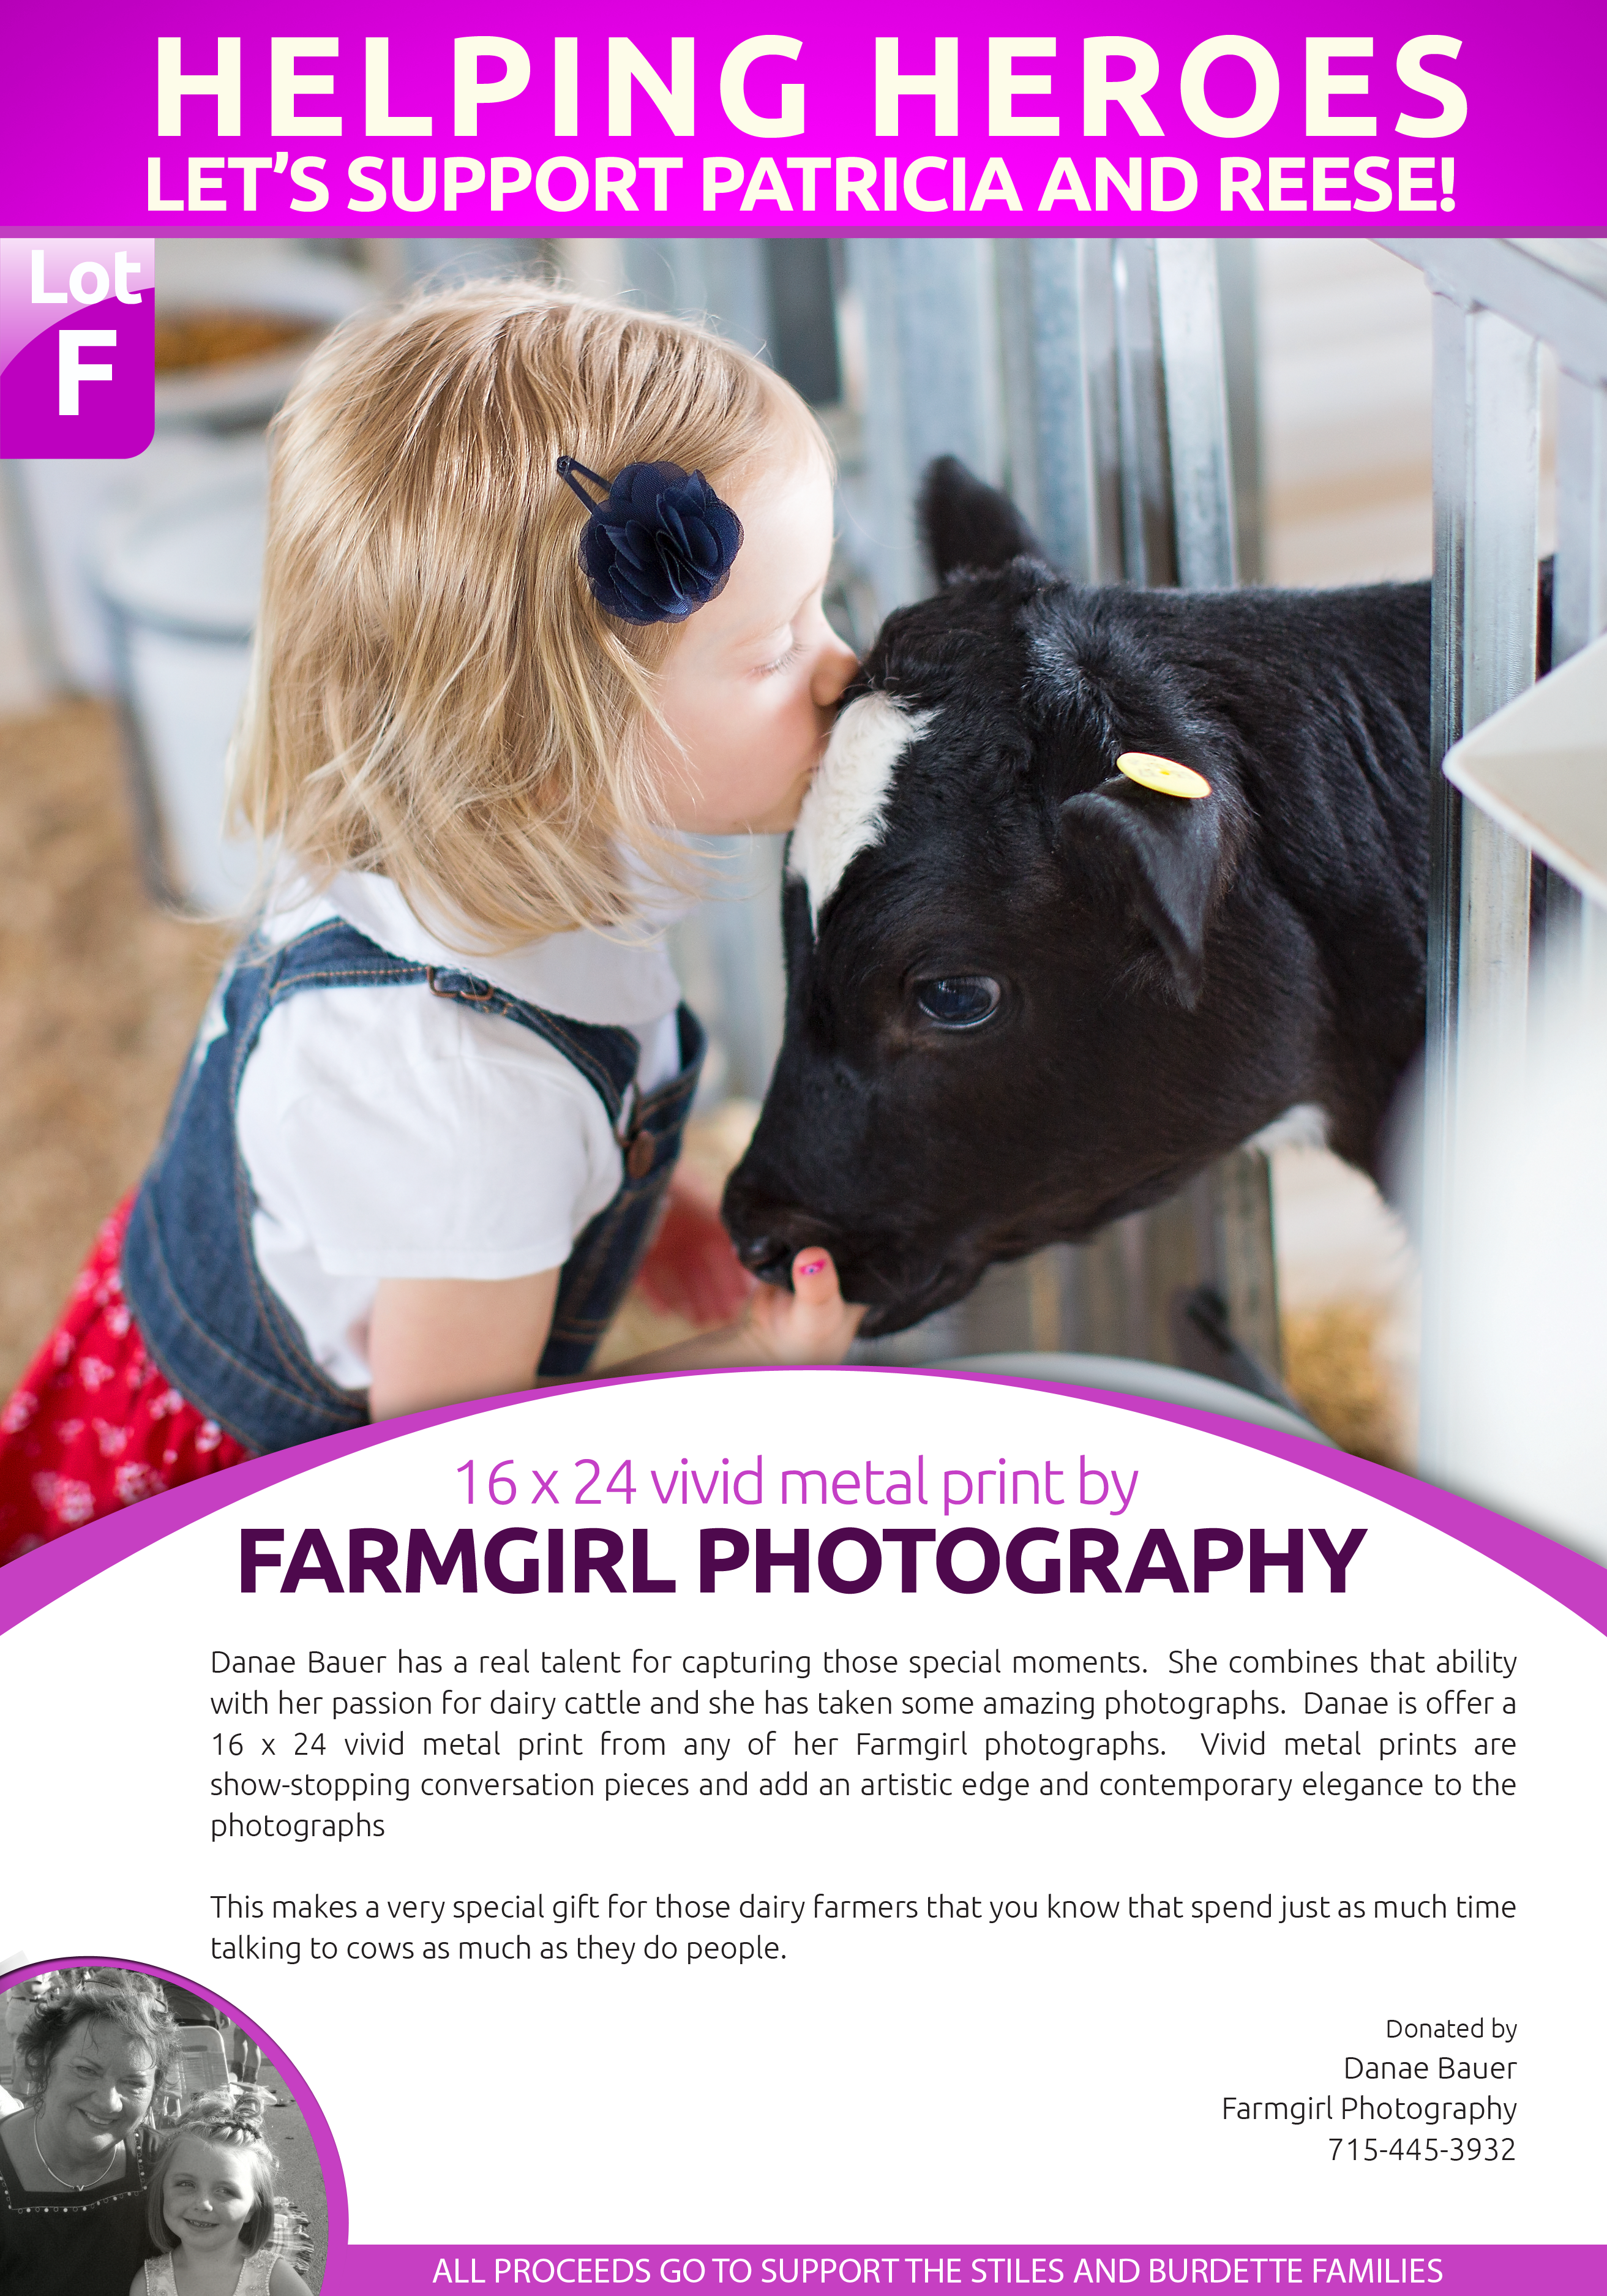 Farm girl photography